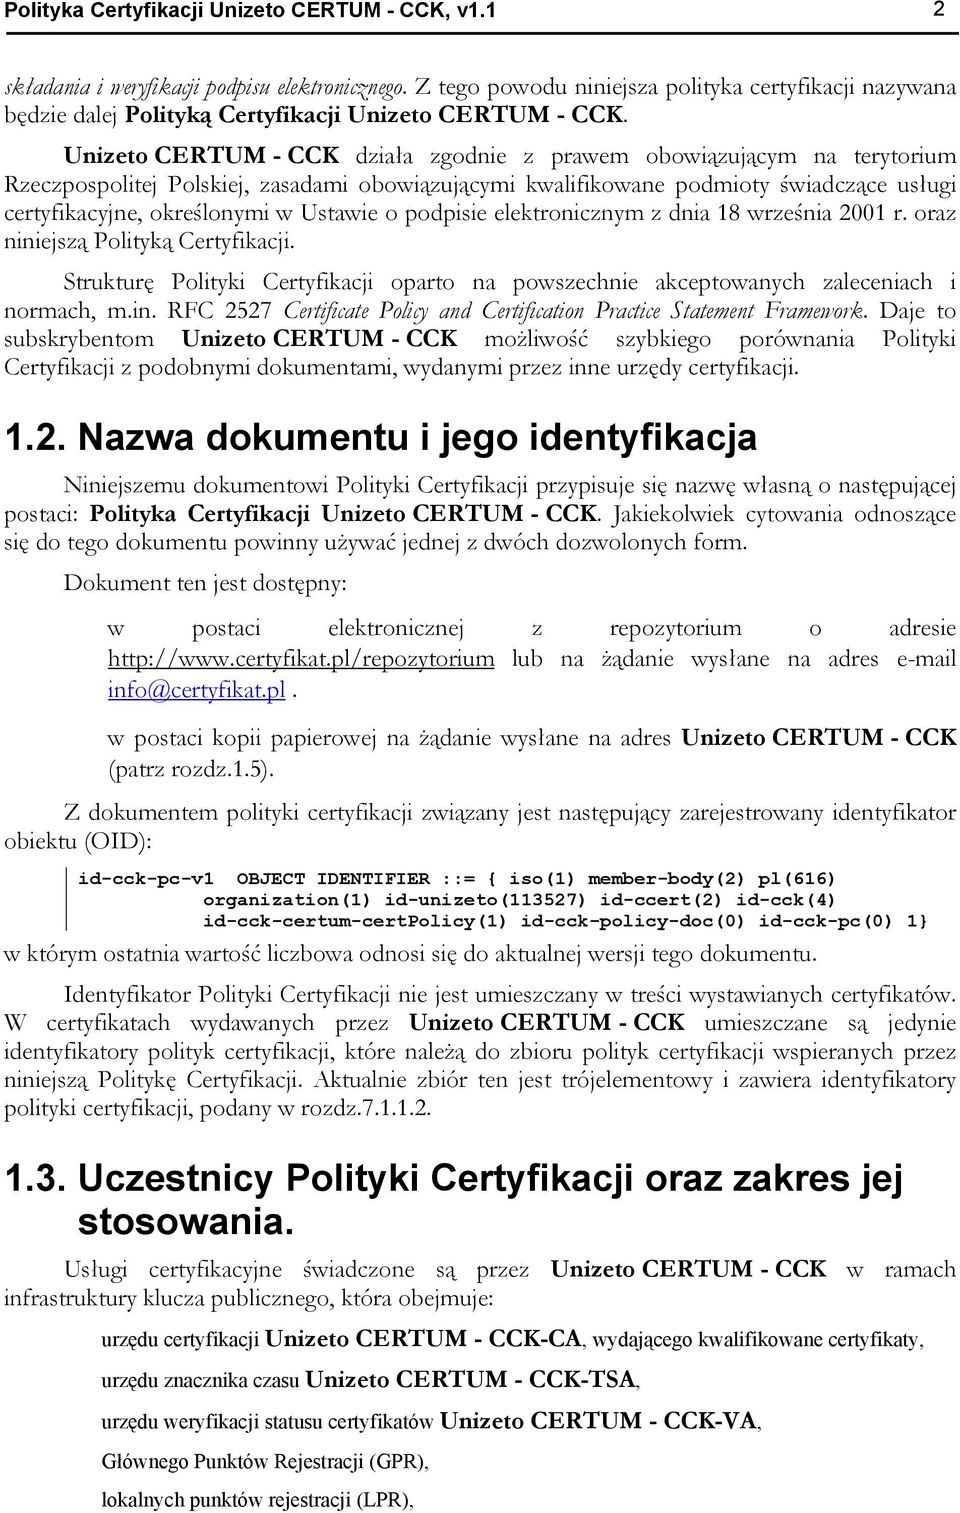 Unizeto CERTUM - CCK działa zgodnie z prawem obowiązującym na terytorium Rzeczpospolitej Polskiej, zasadami obowiązującymi kwalifikowane podmioty świadczące usługi certyfikacyjne, określonymi w